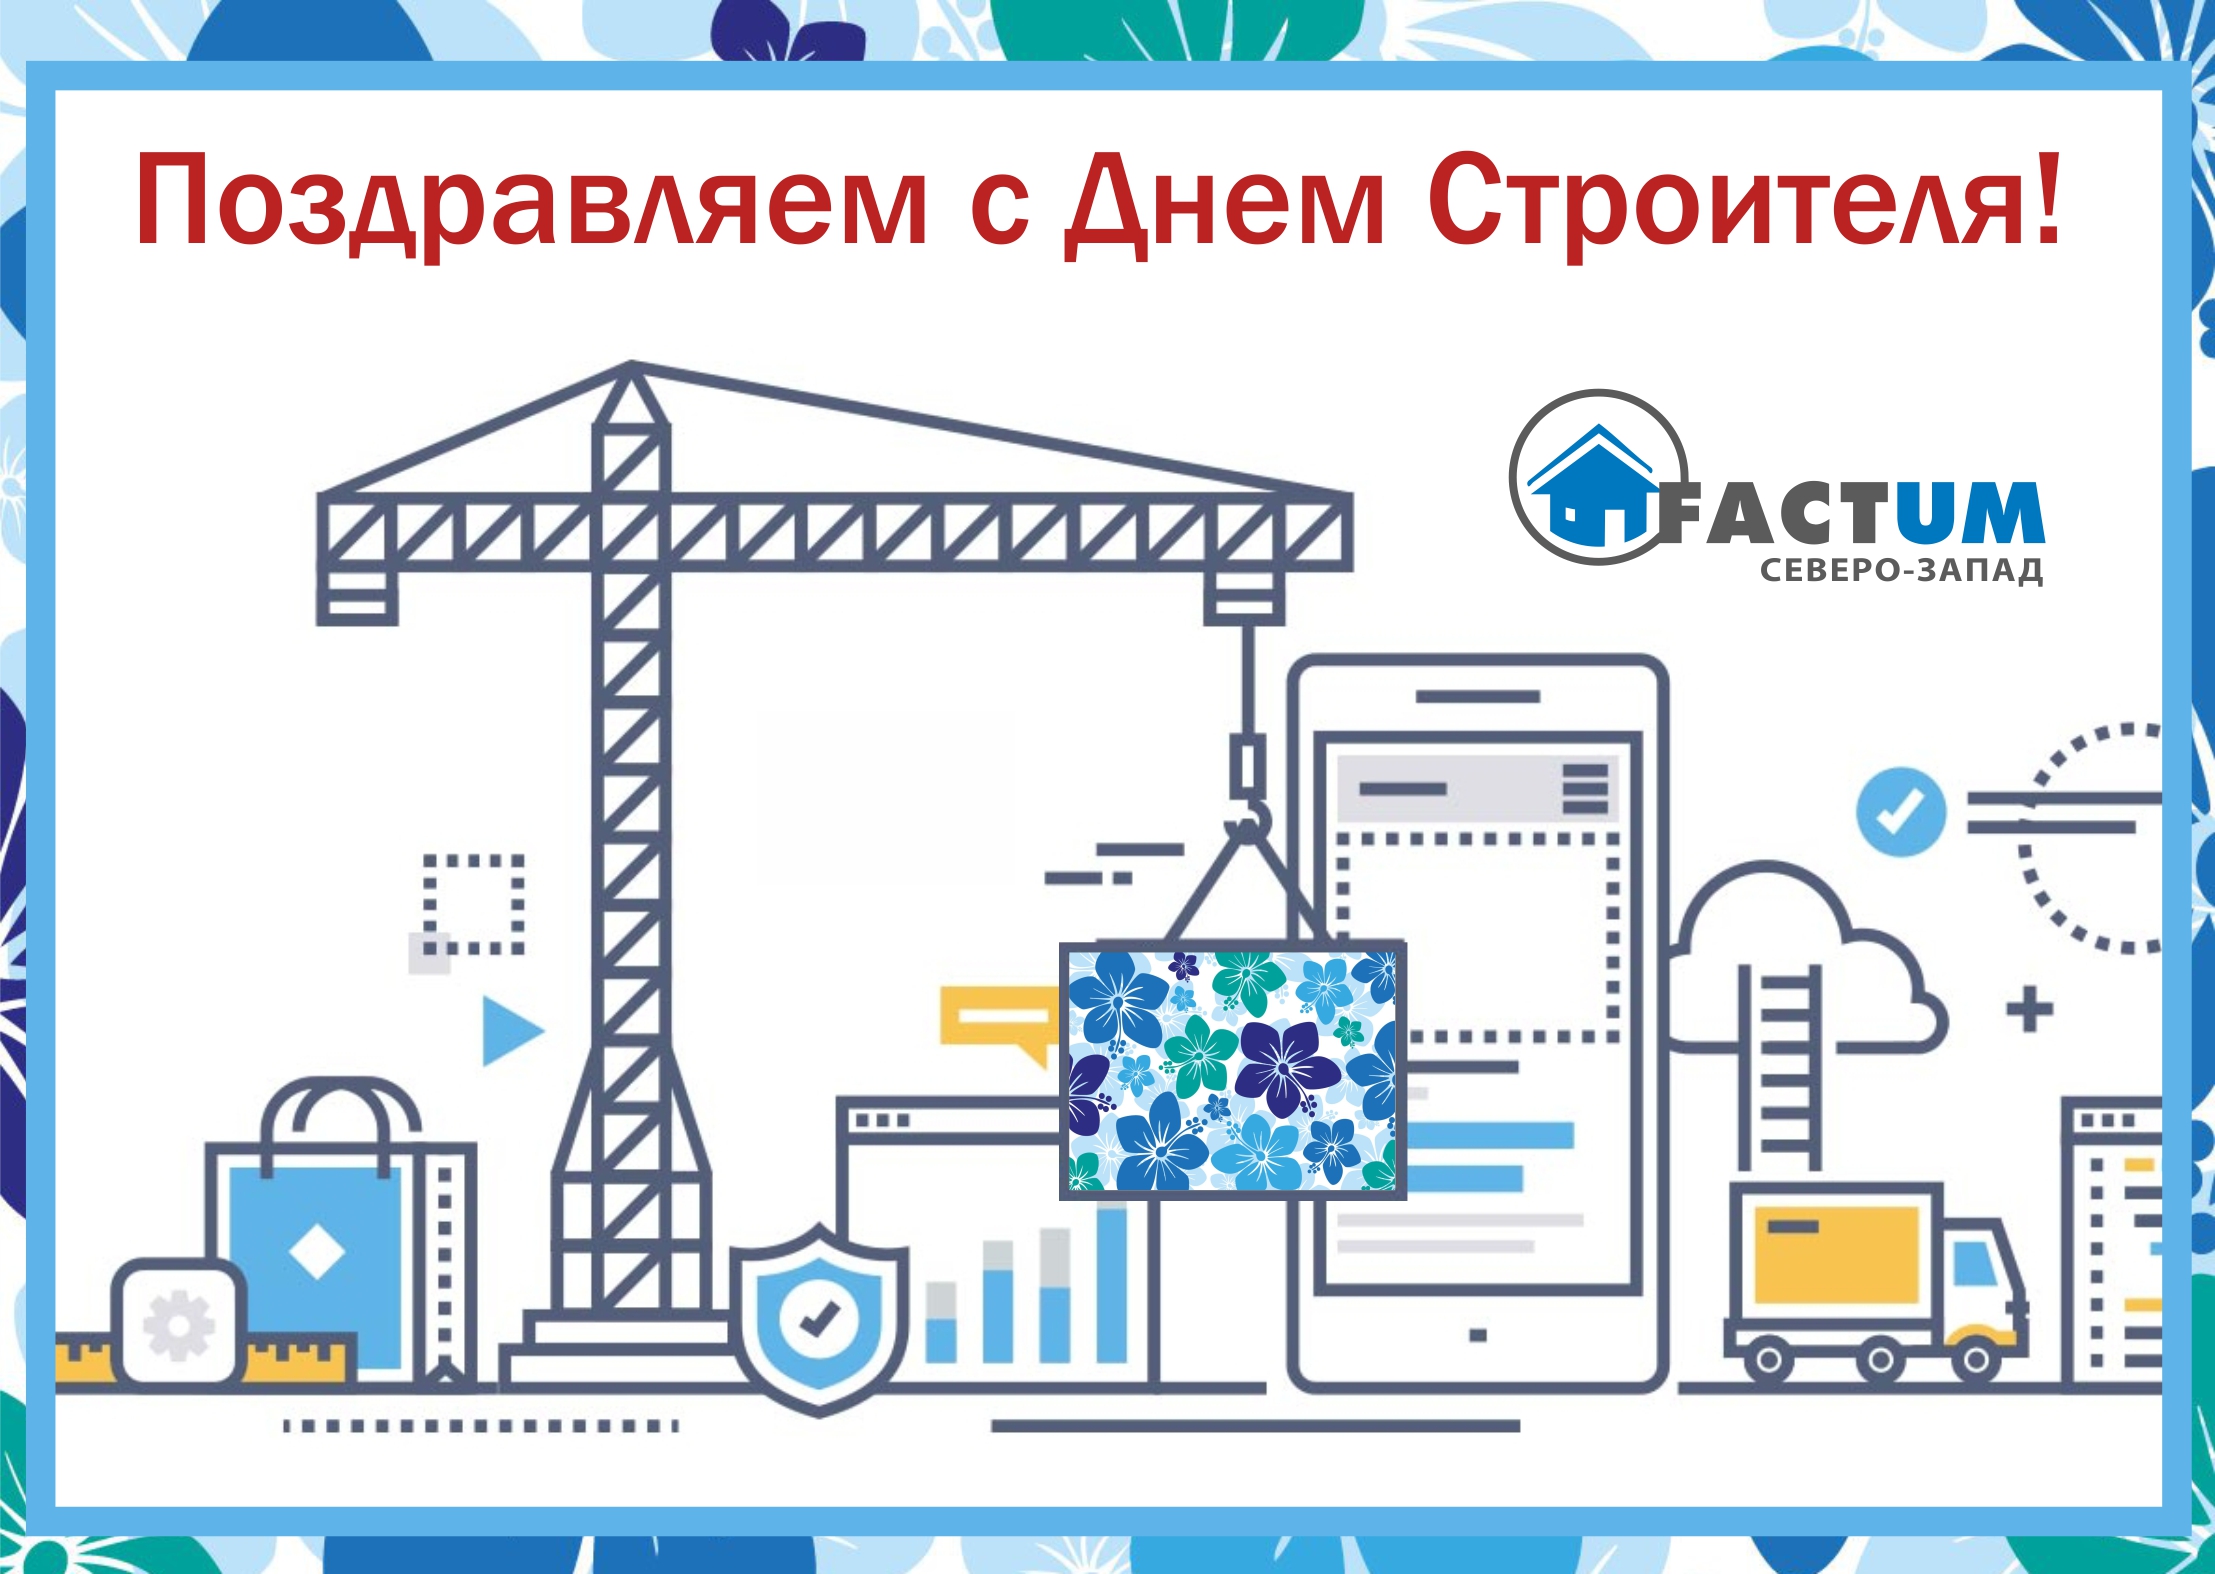 2 Компания «Фактум Северо-Запад», Санкт-Петербург | Изорок